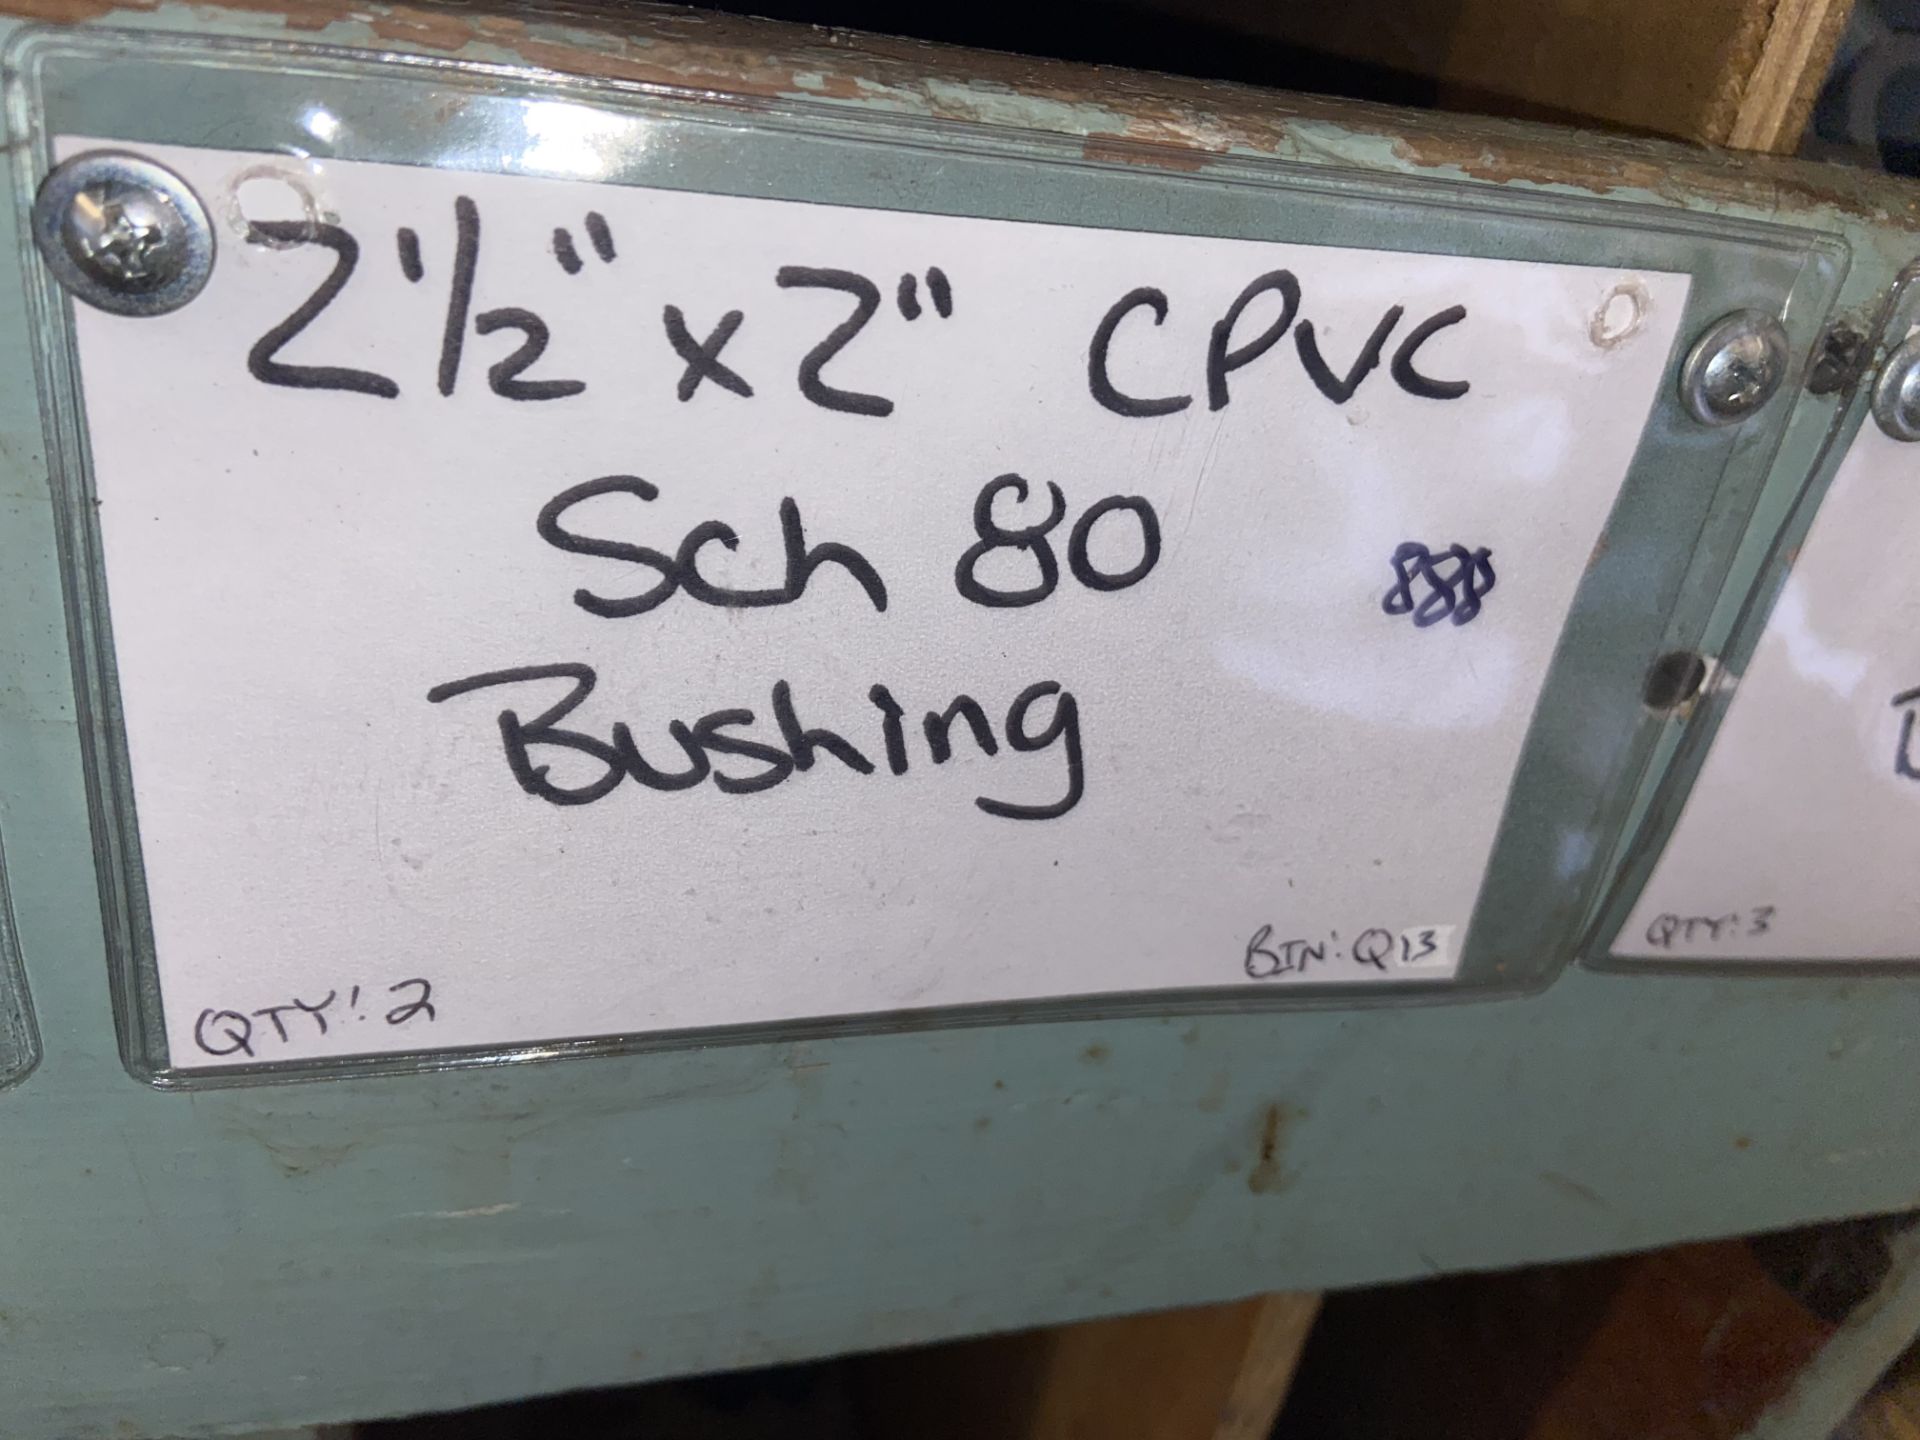 (9) 2 1/2”x 1” Female CPVC SCH 80 Bushing (2) 2 1/2”x 2” CPVC SCH 80 Bushing (BinQ12-Q18) (3) 3x” - Image 4 of 6